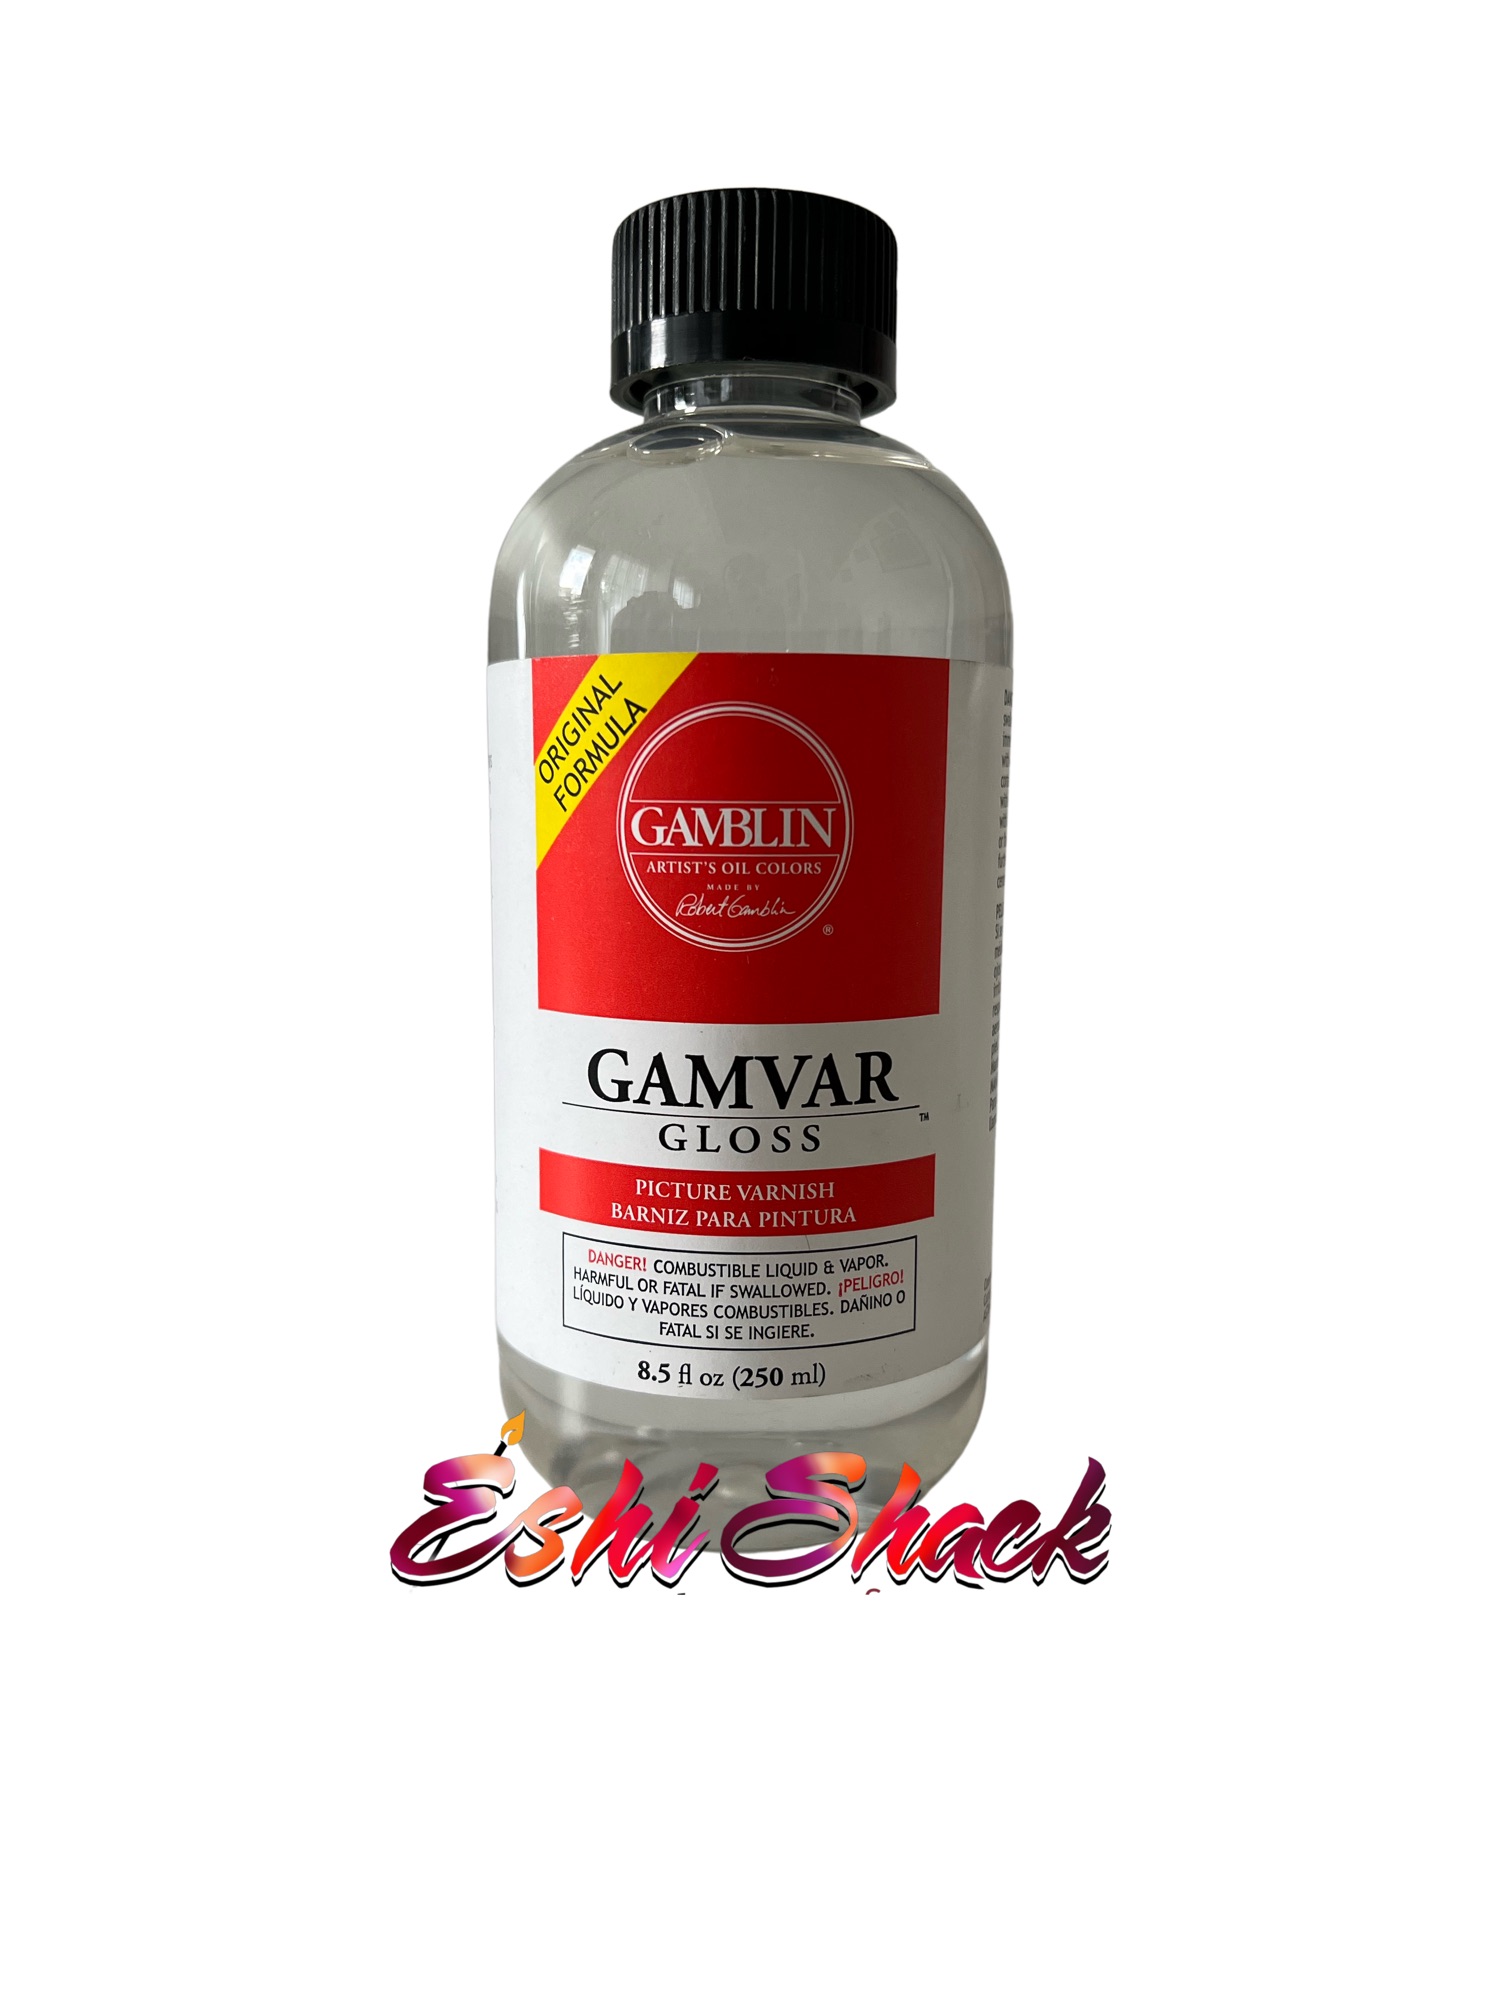 GAMBLIN Gamvar Varnish, Picture Varnish 125ml/250ml